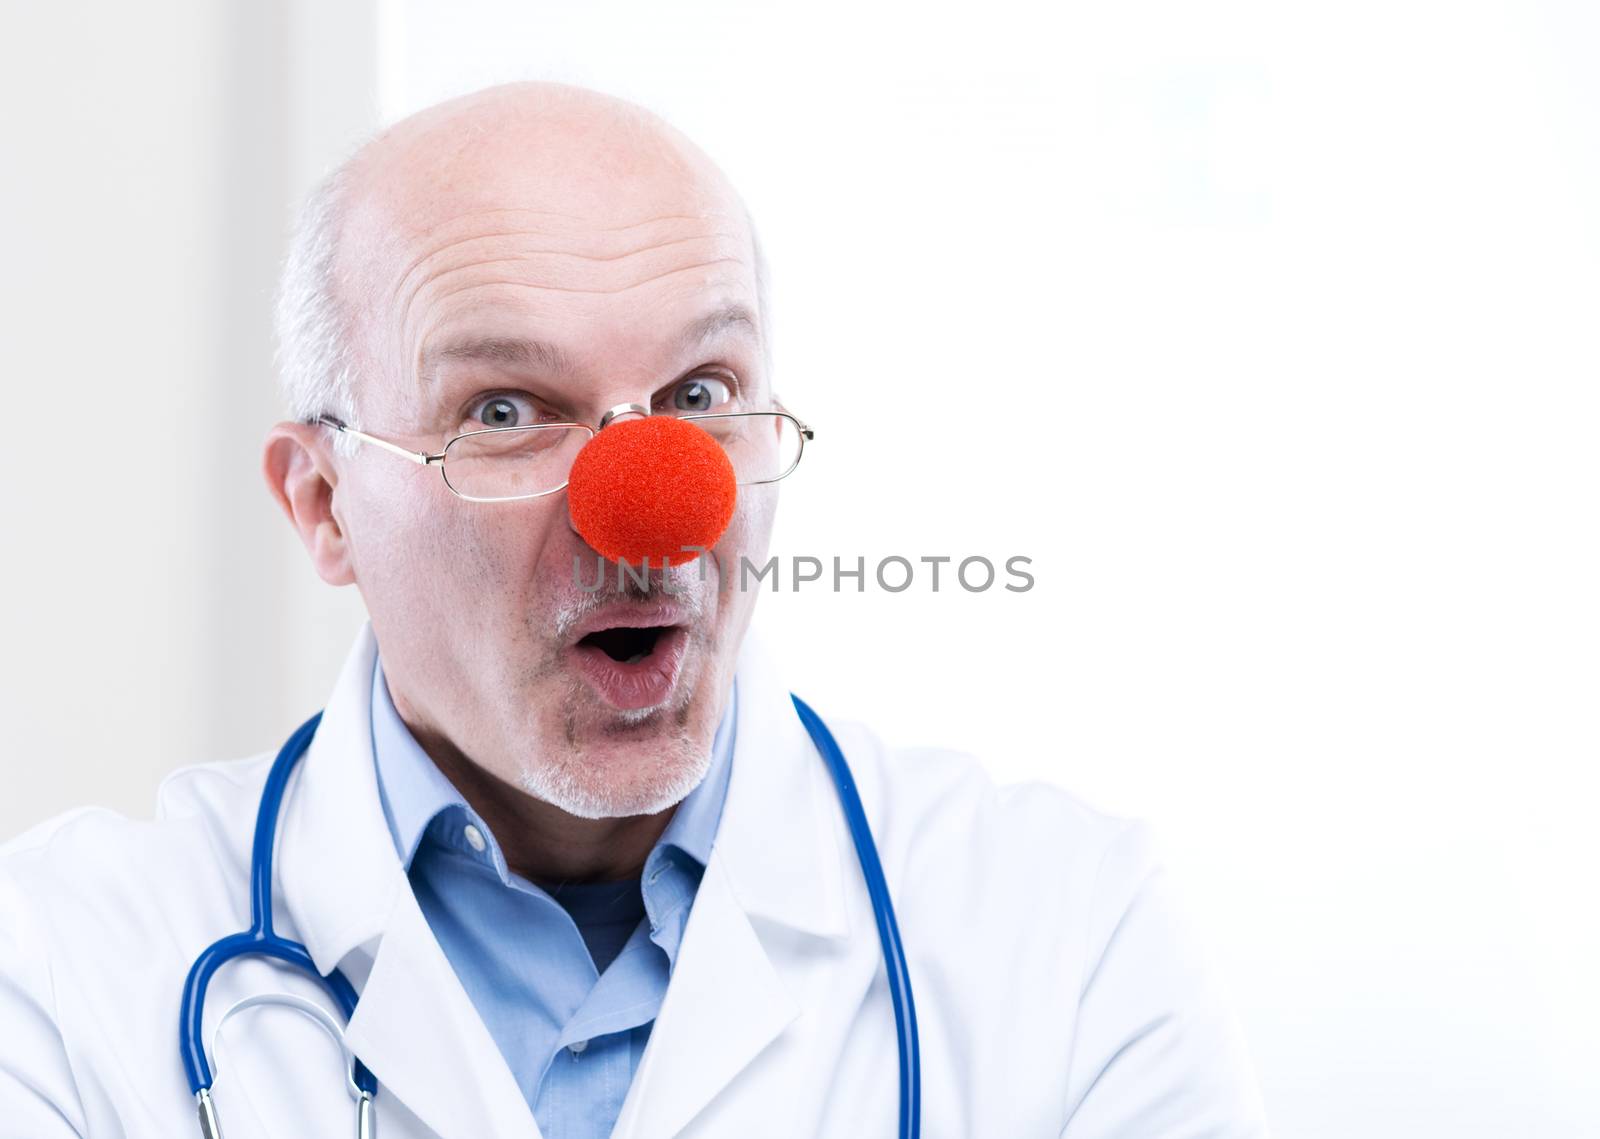 Clown doctor by stokkete